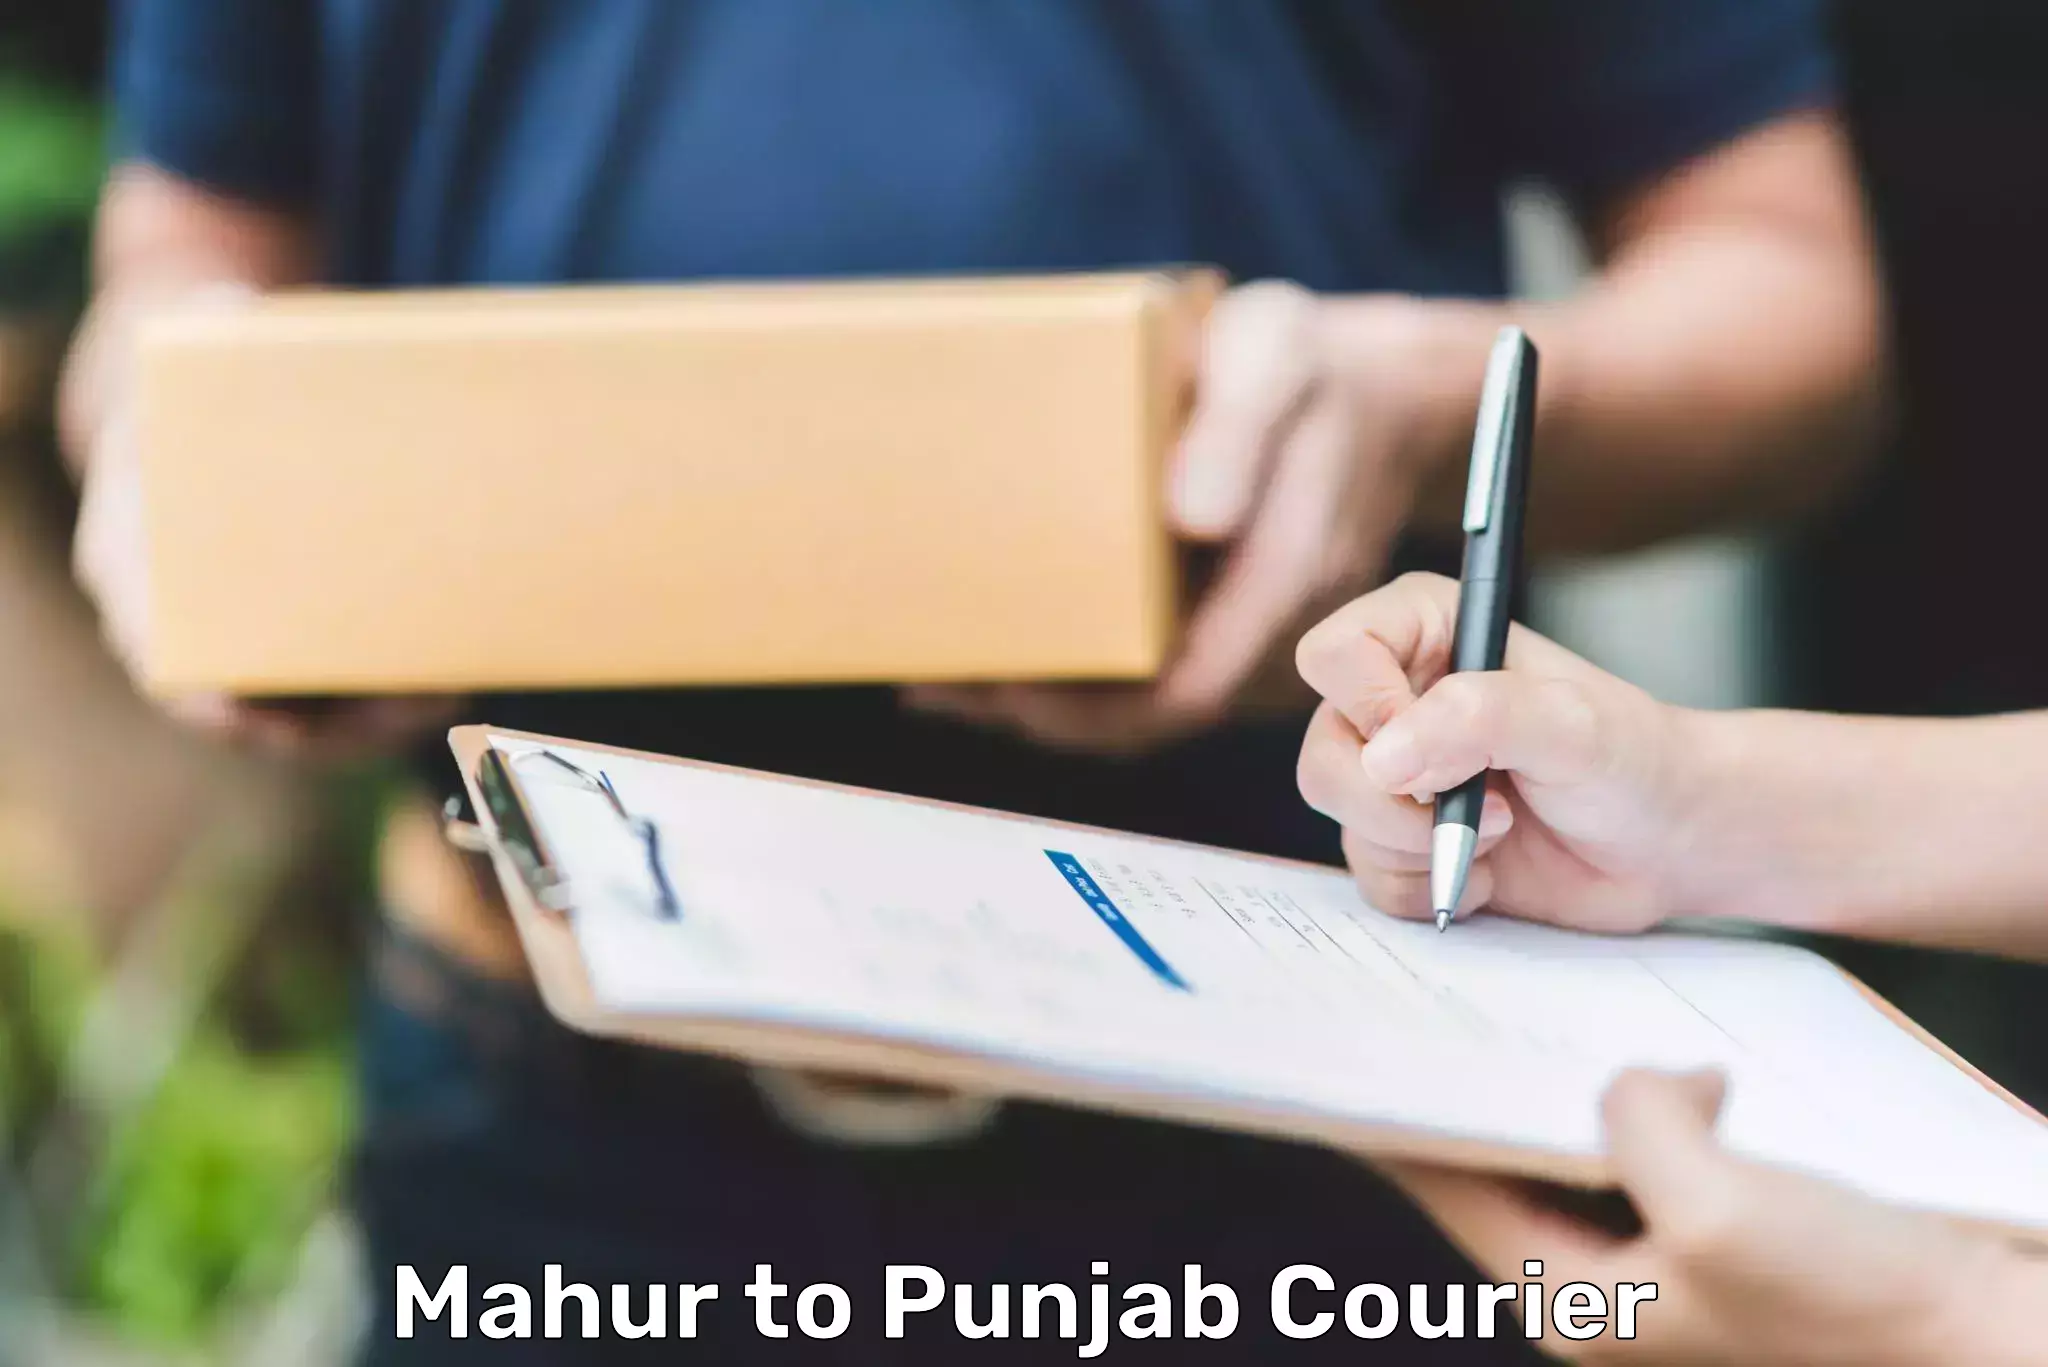 Seamless shipping experience Mahur to Punjab